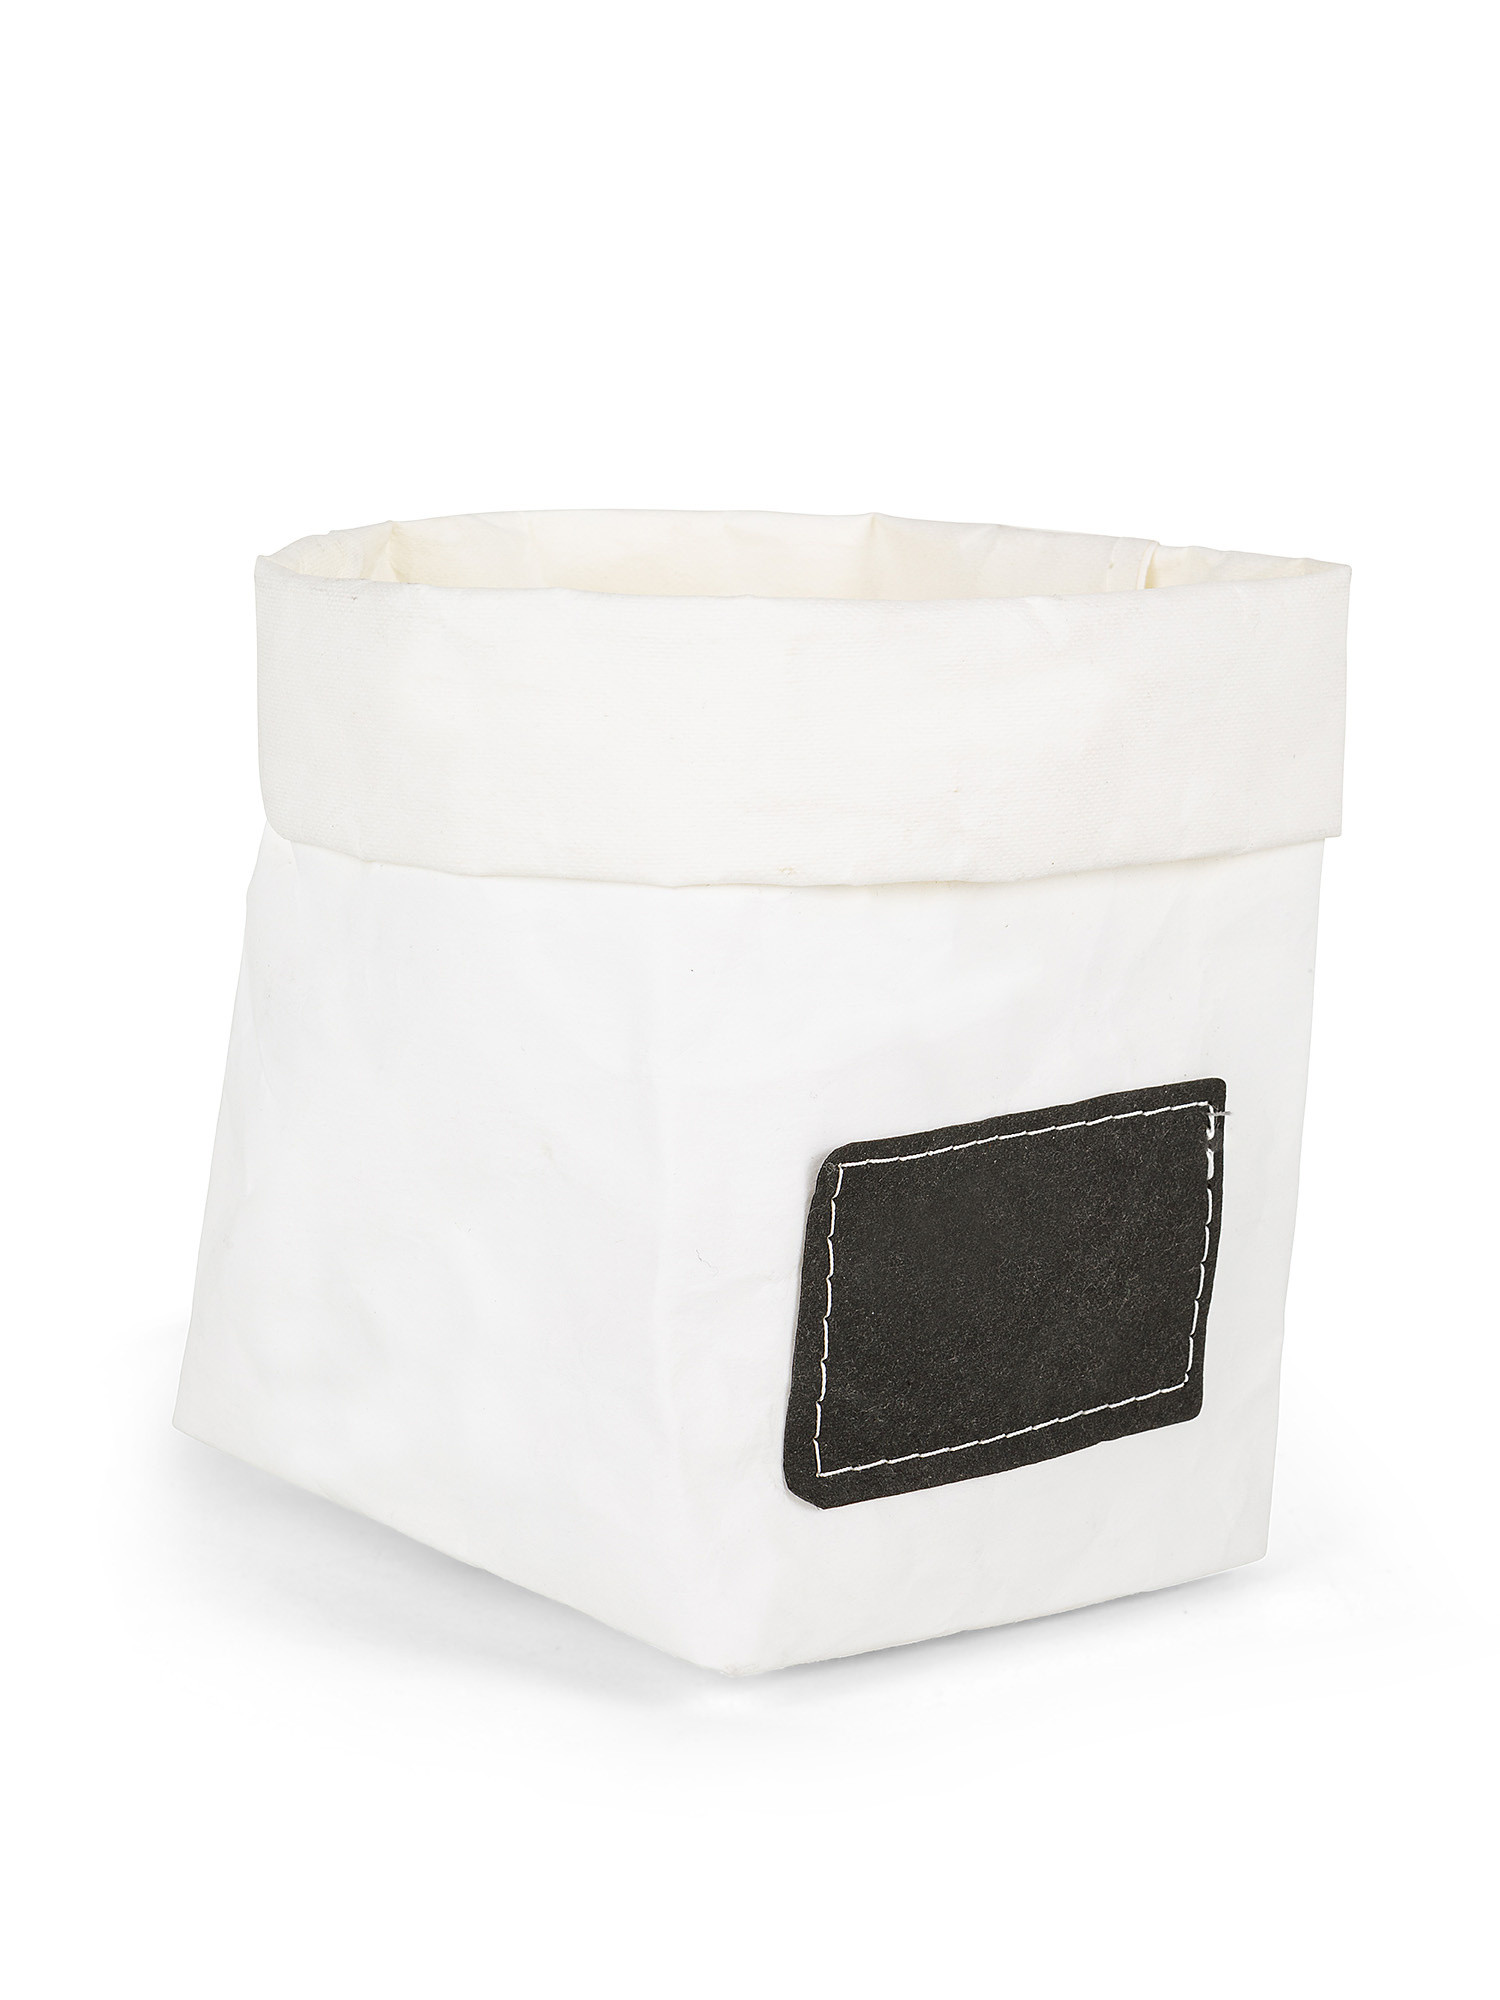 Reversible cellulose fiber basket, White, large image number 1